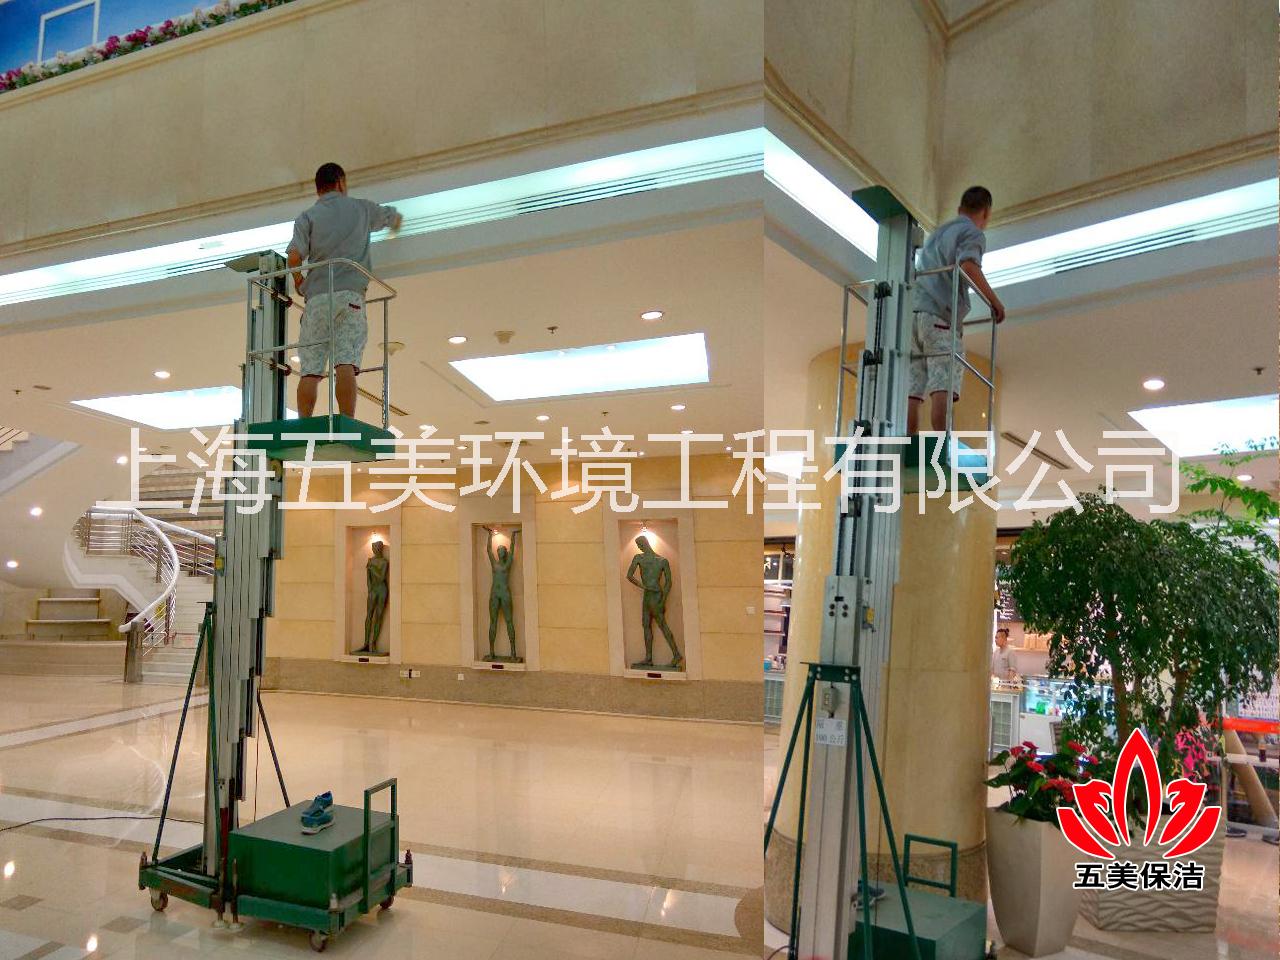 上海保洁公司,上海保洁公司推荐